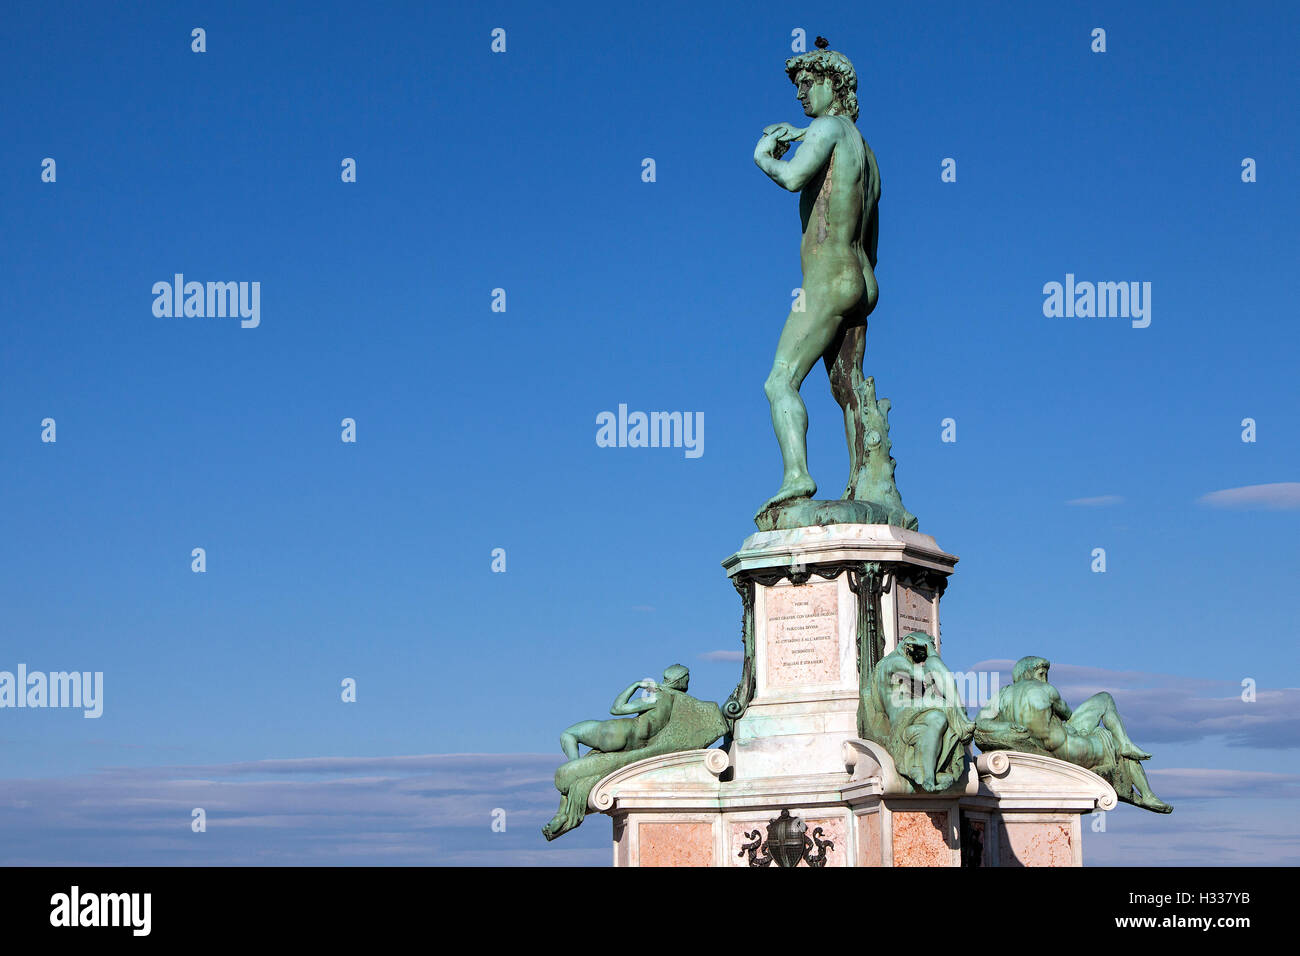 Copie de la Statue de David, Piazzale Michelangelo, Florence, Toscane, Italie Banque D'Images